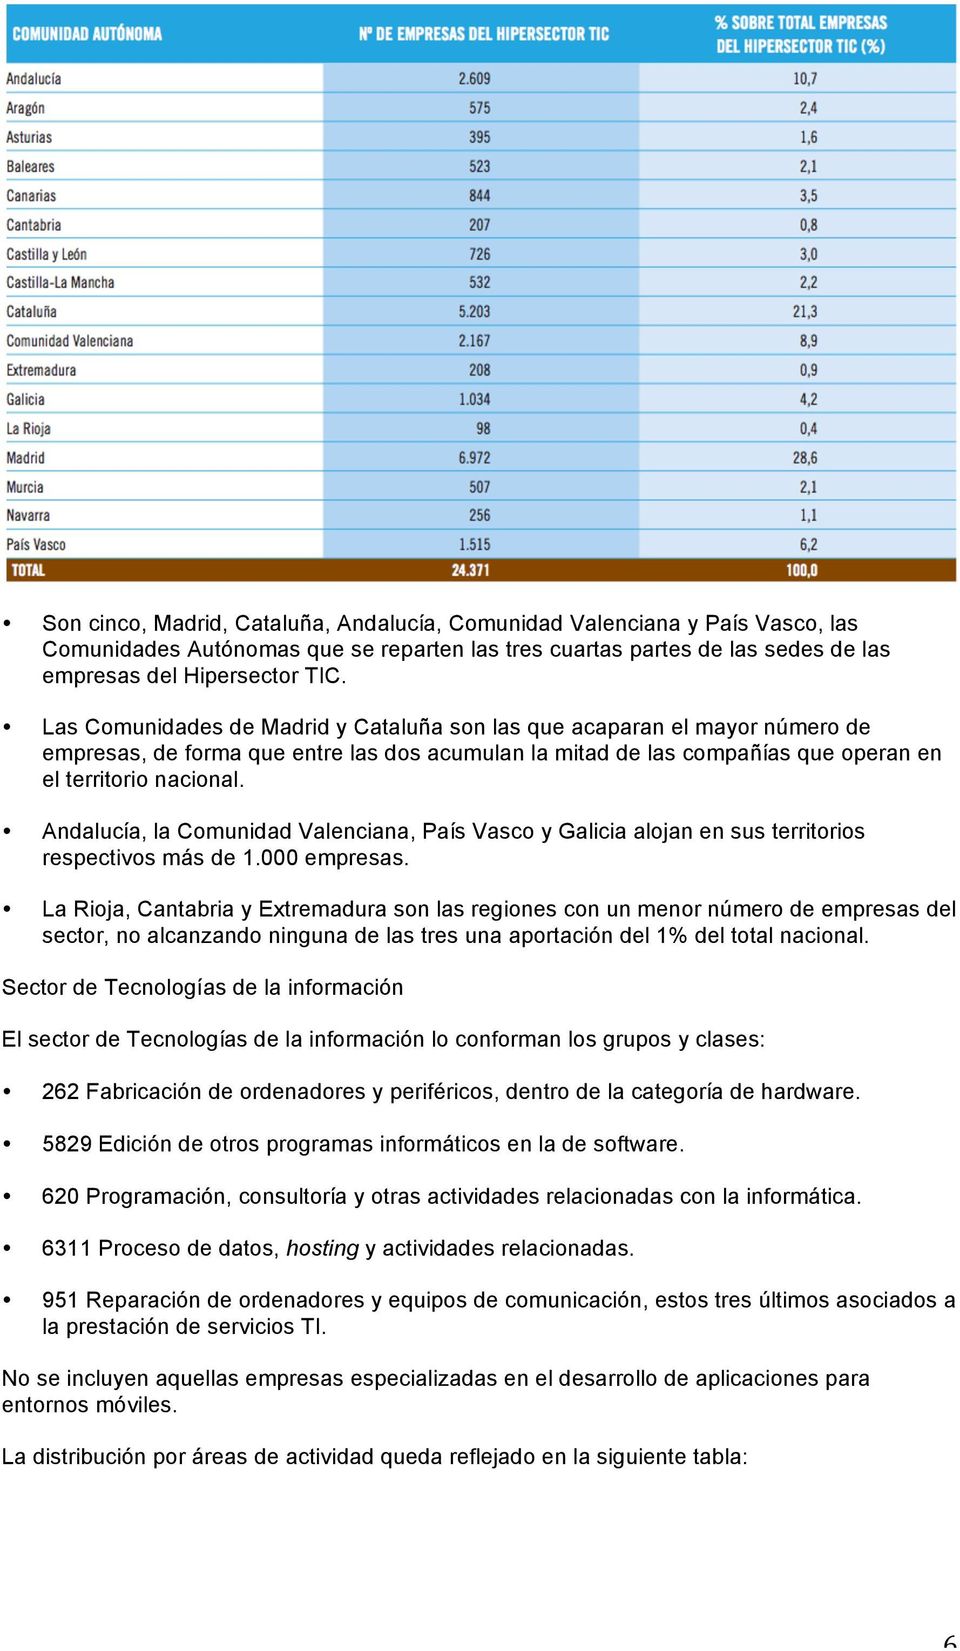 Andalucía, la Comunidad Valenciana, País Vasco y Galicia alojan en sus territorios respectivos más de 1.000 empresas.